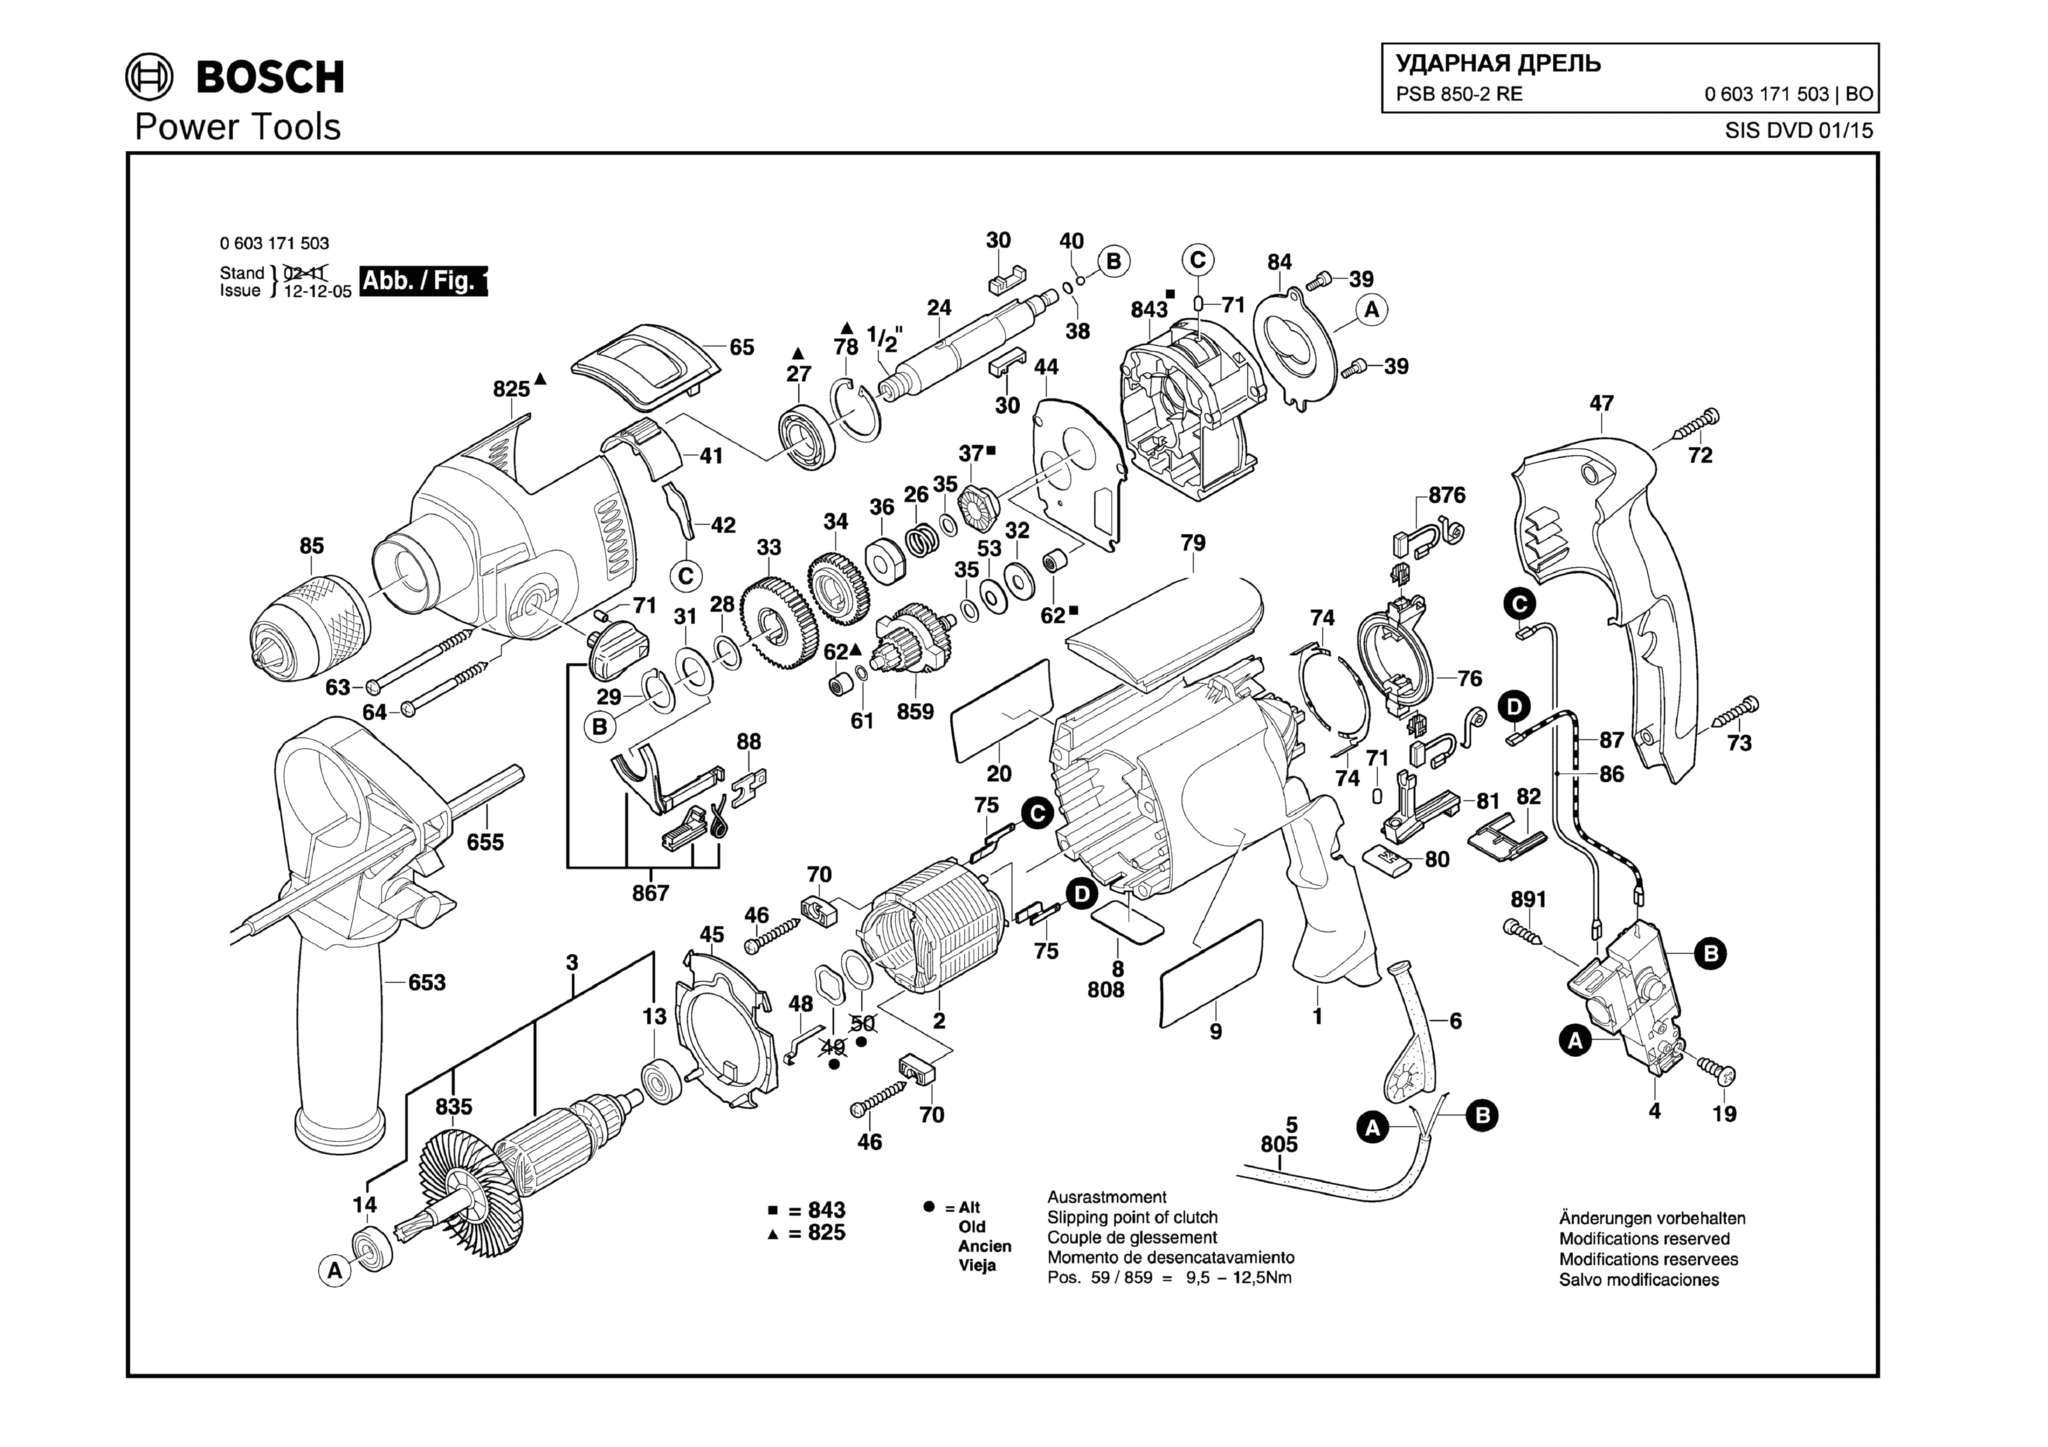 Запчасти, схема и деталировка Bosch PSB 850-2 RE (ТИП 0603171503)